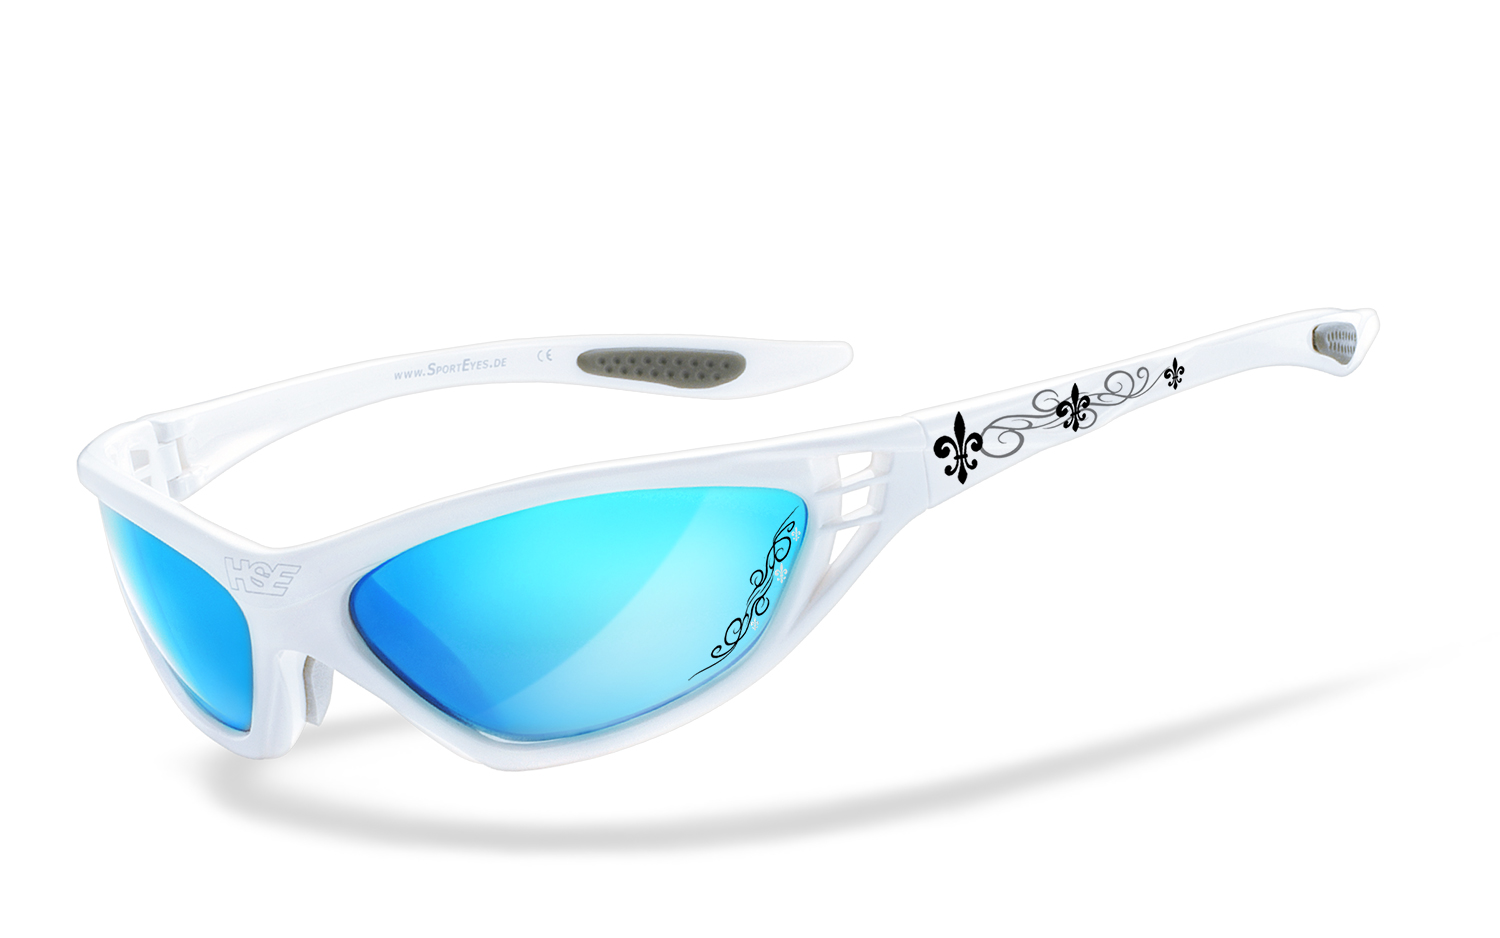 HSE SportEyes | SPEED MASTER 2.1 - tribal lilies - laser blue  Sportbrille, Fahrradbrille, Sonnenbrille, Bikerbrille, Radbrille, UV400 Schutzfilter